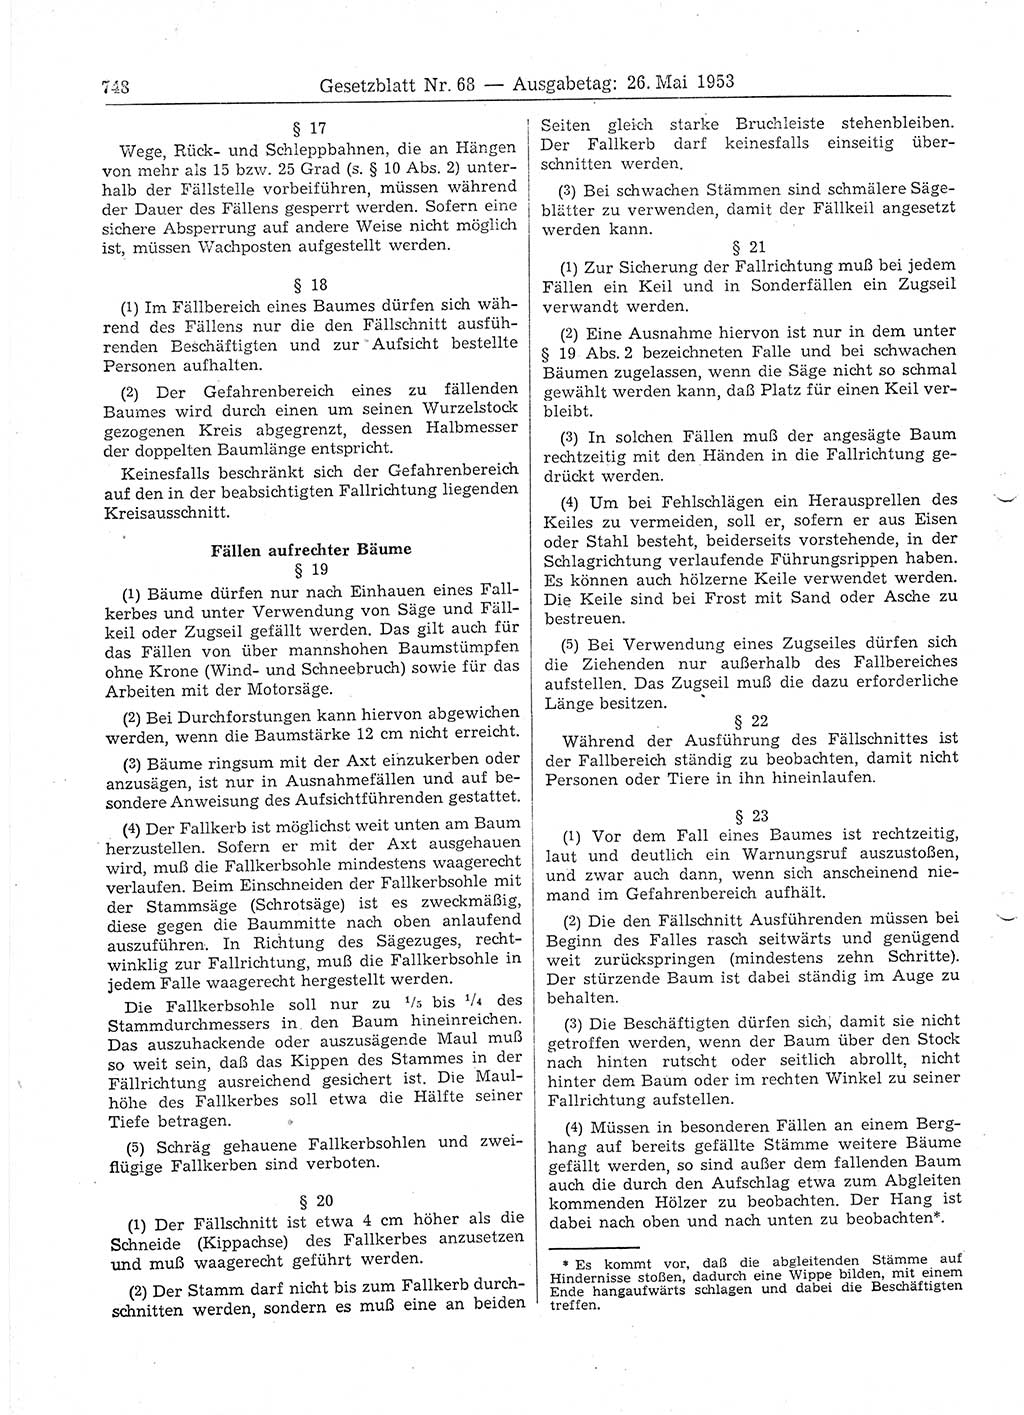 Gesetzblatt (GBl.) der Deutschen Demokratischen Republik (DDR) 1953, Seite 748 (GBl. DDR 1953, S. 748)